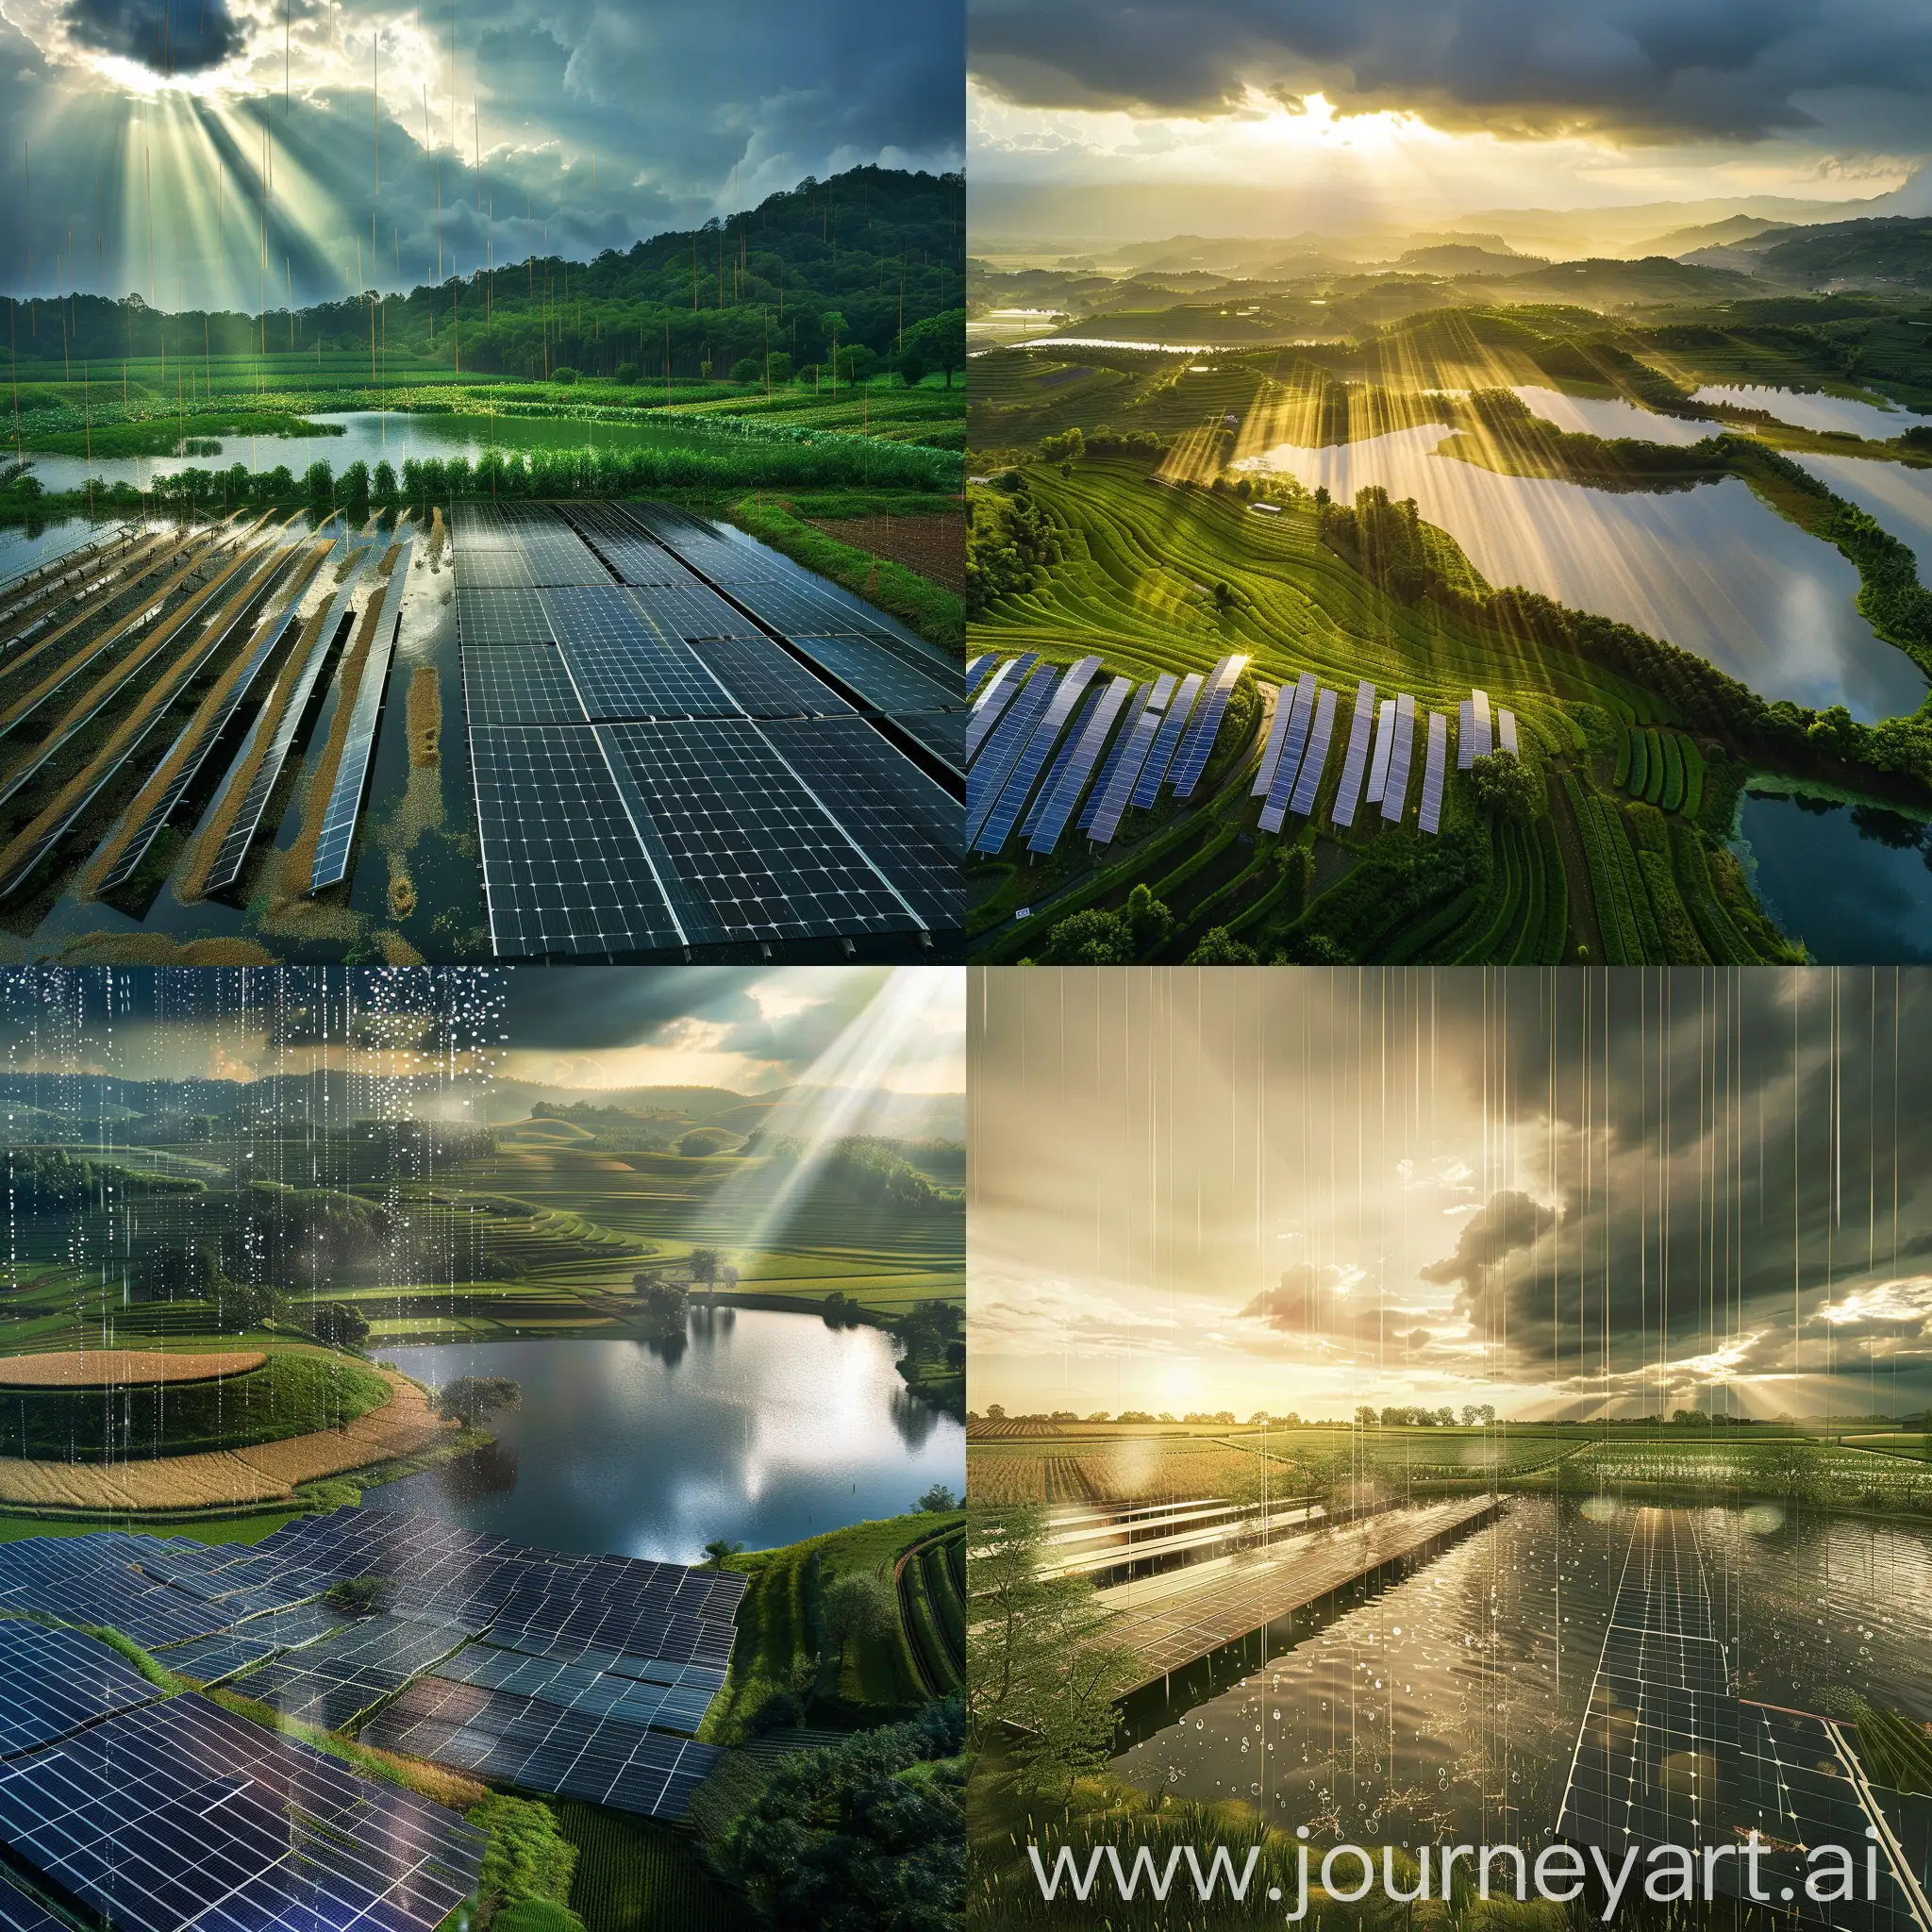 谷雨润泽  镜面湖泊  未来农田 农民和谐共生 光伏板绿色能源 科技融合 光与影的交织 春天希望的寓意